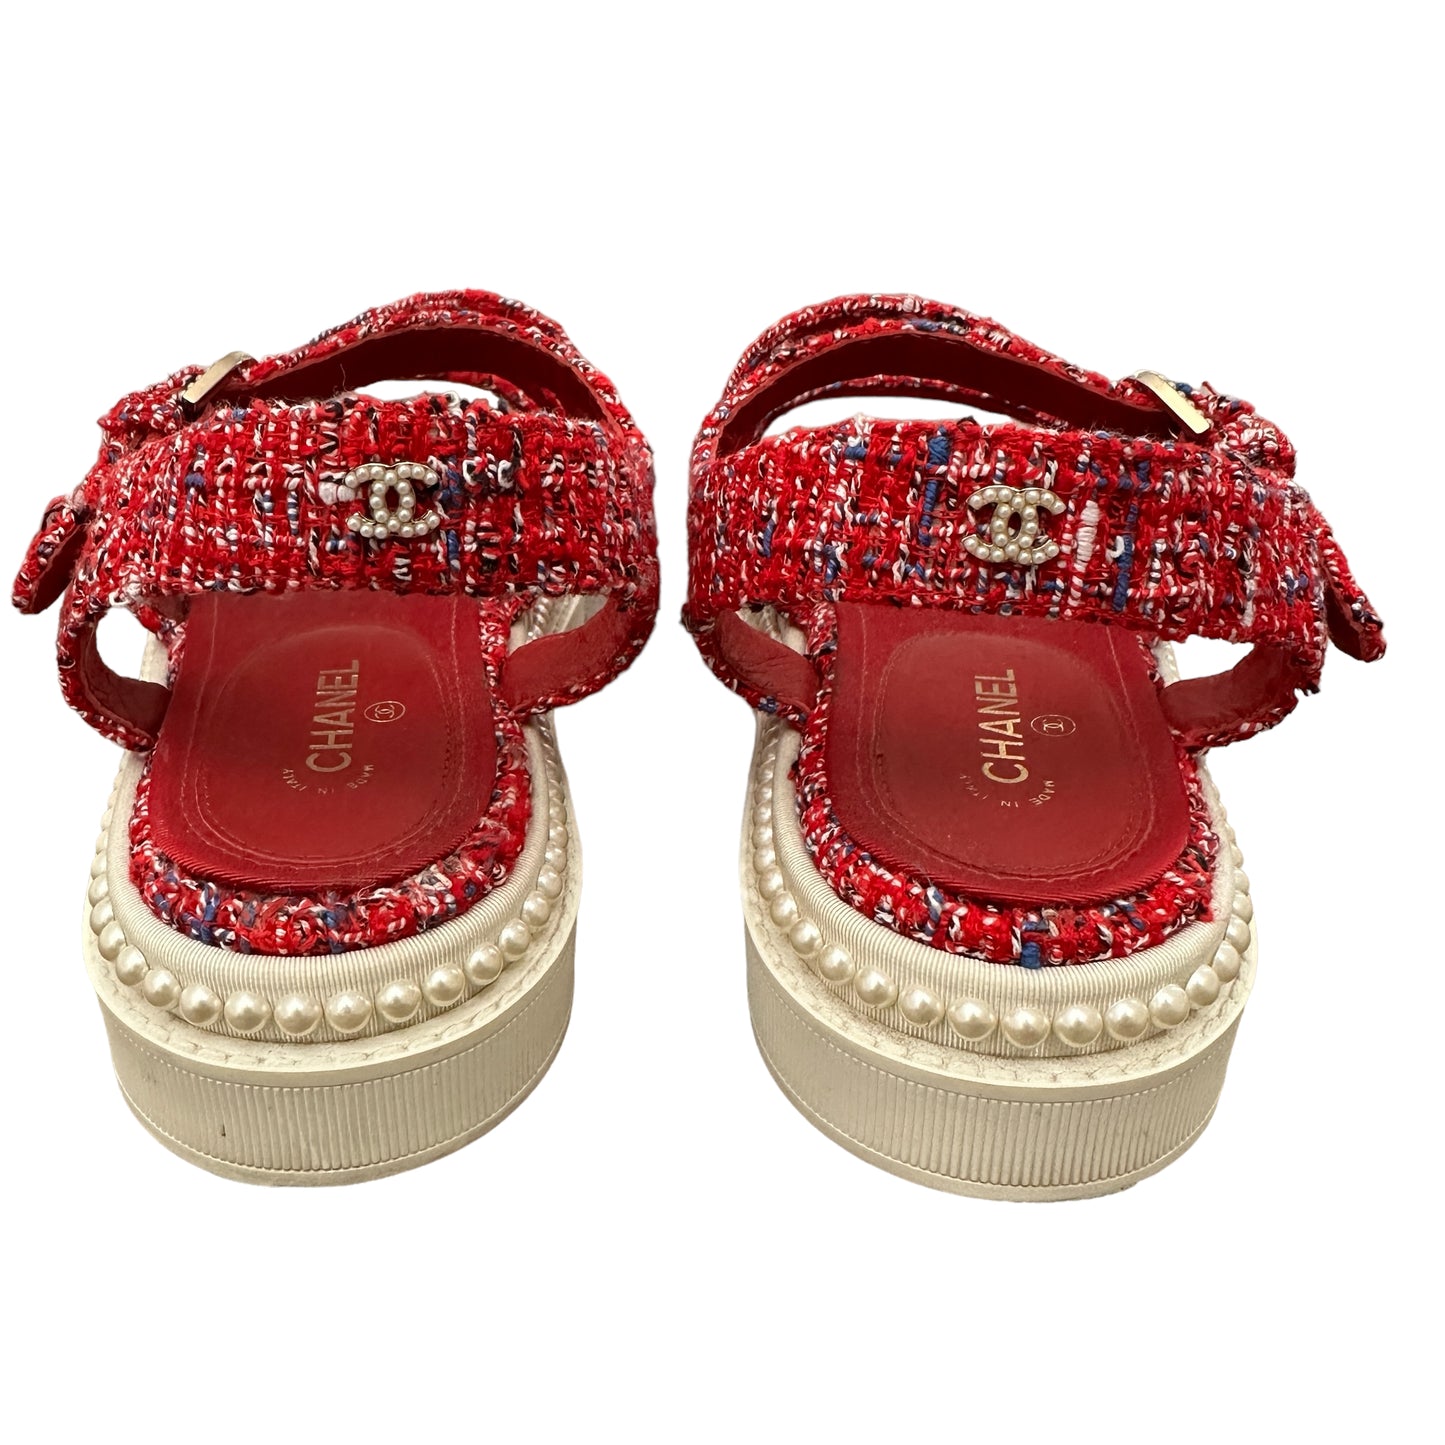 Red Tweed Sandals - 8